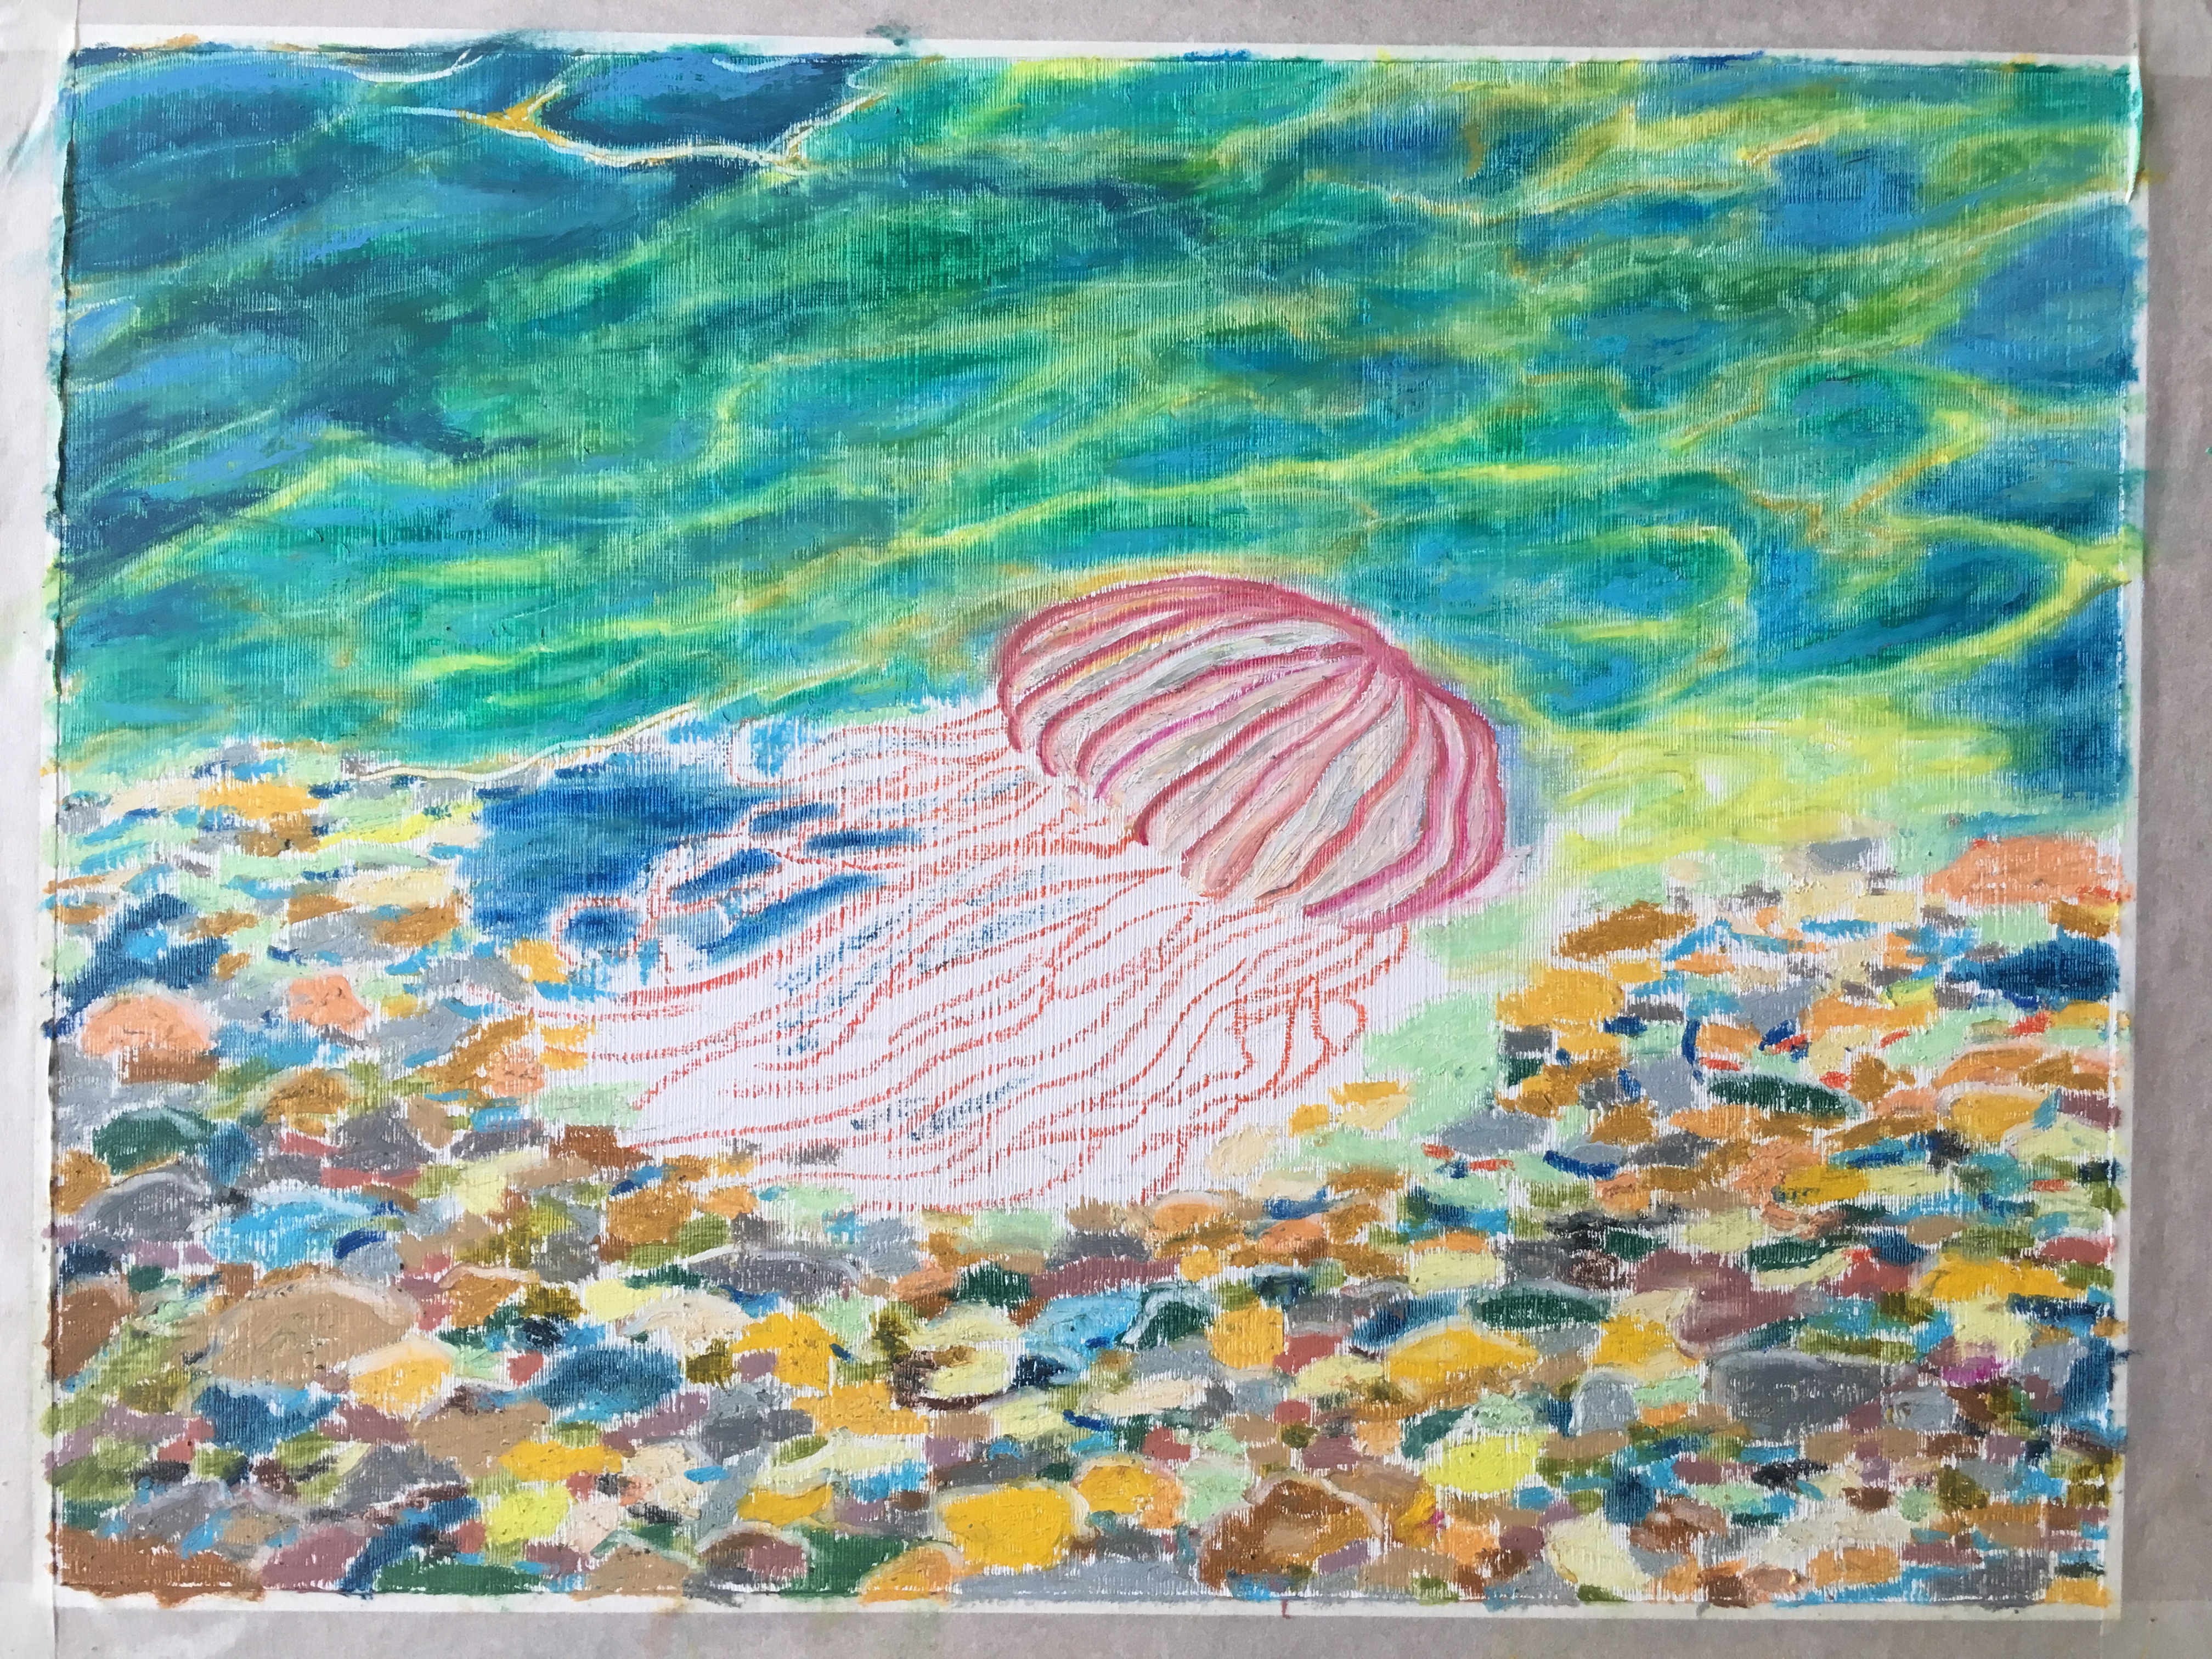 медуза подводный мир море масляная пастель рисунок художник Альберт Сафиуллин